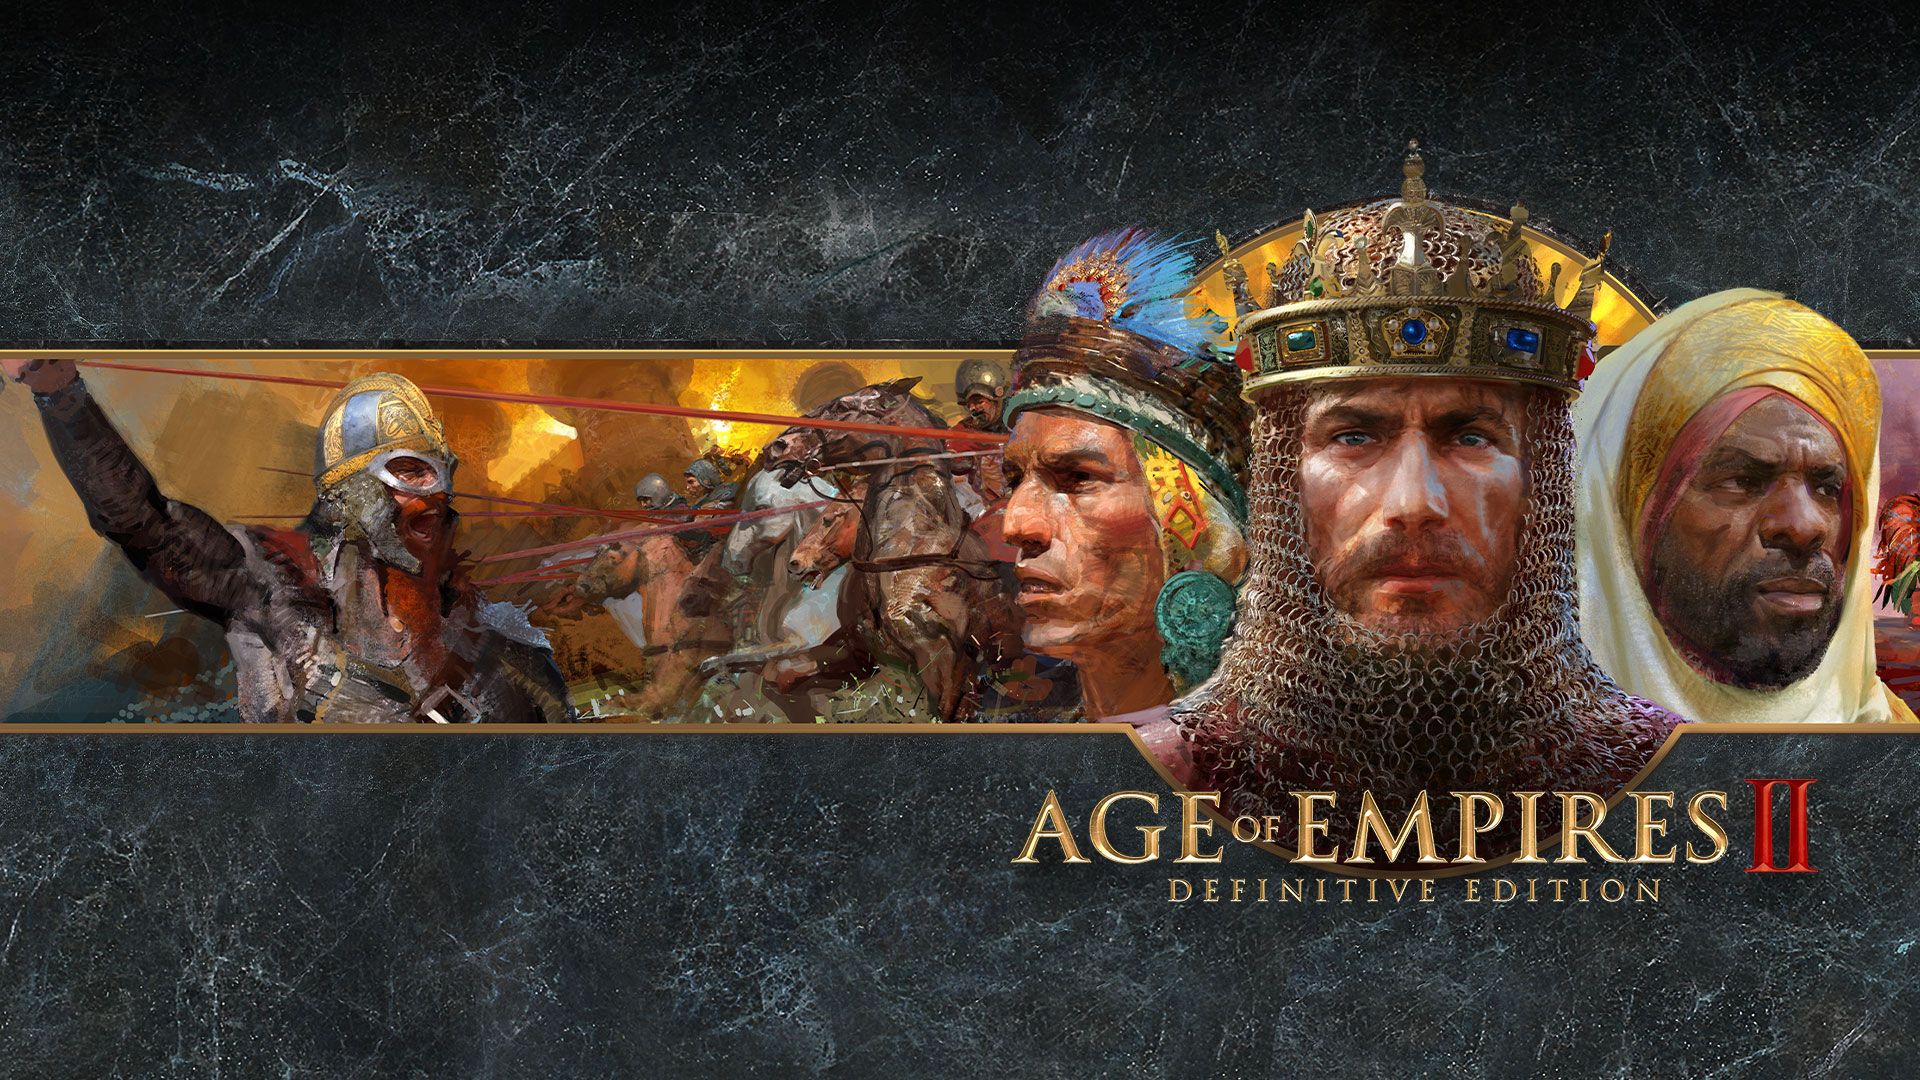 Logotipo de Age of Empires II Definitive Edition con representaciones artísticas de facciones en guerra